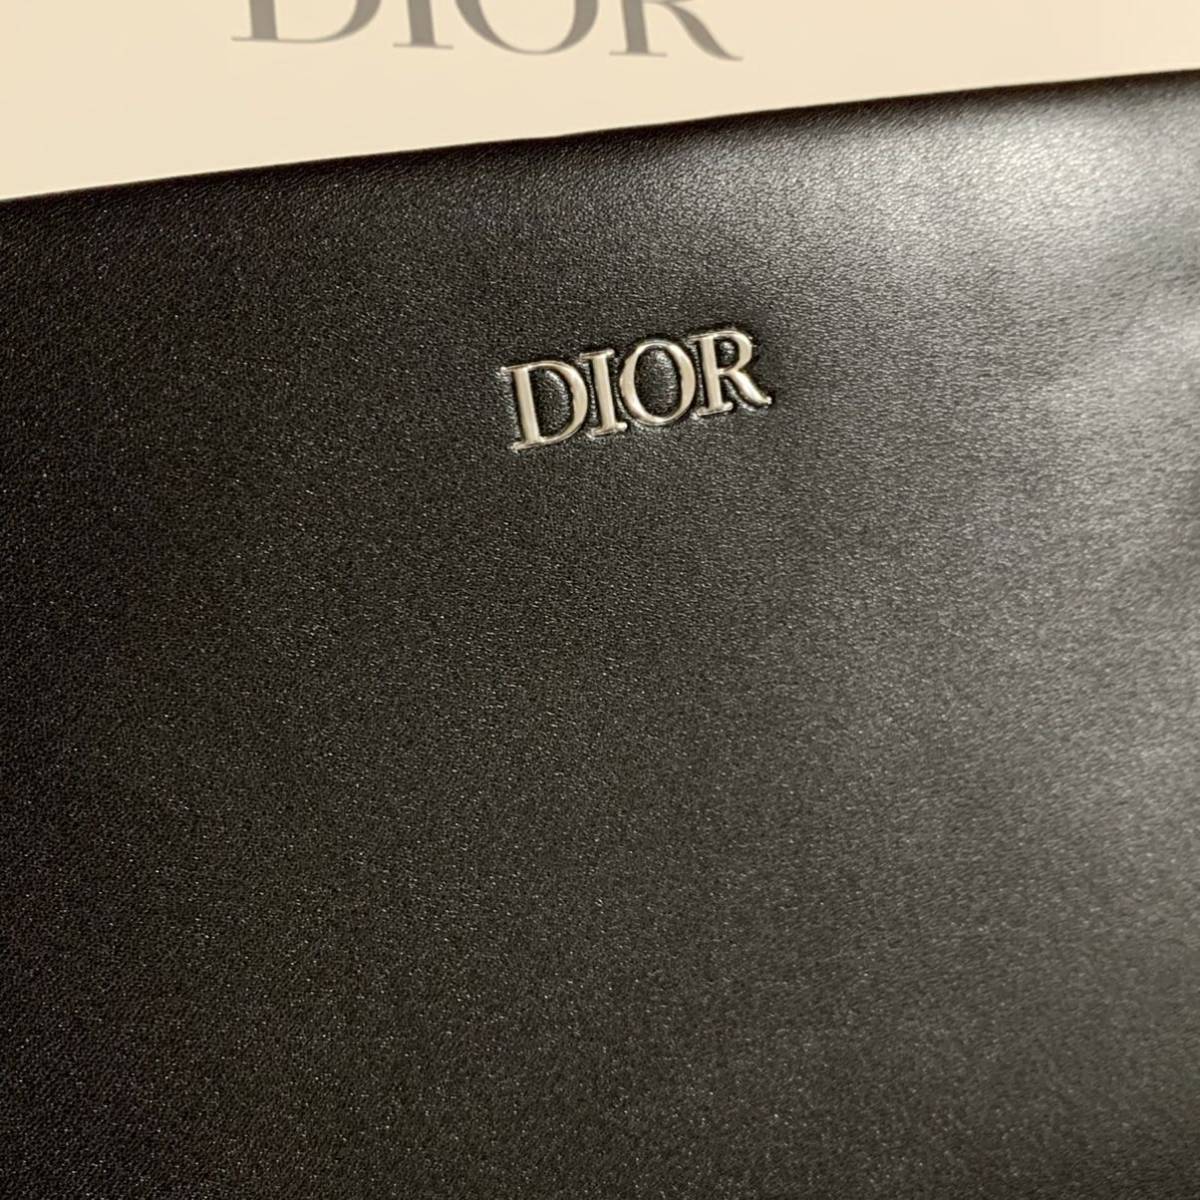 レア Christian Dior クラッチバッグ フラットポーチ ブラック 千鳥柄 千鳥格子 伊勢丹限定 2022 ノベルティ 本物 新品 ディオール  メンズ product details | Yahoo! Auctions Japan proxy bidding and shopping  service | FROM JAPAN